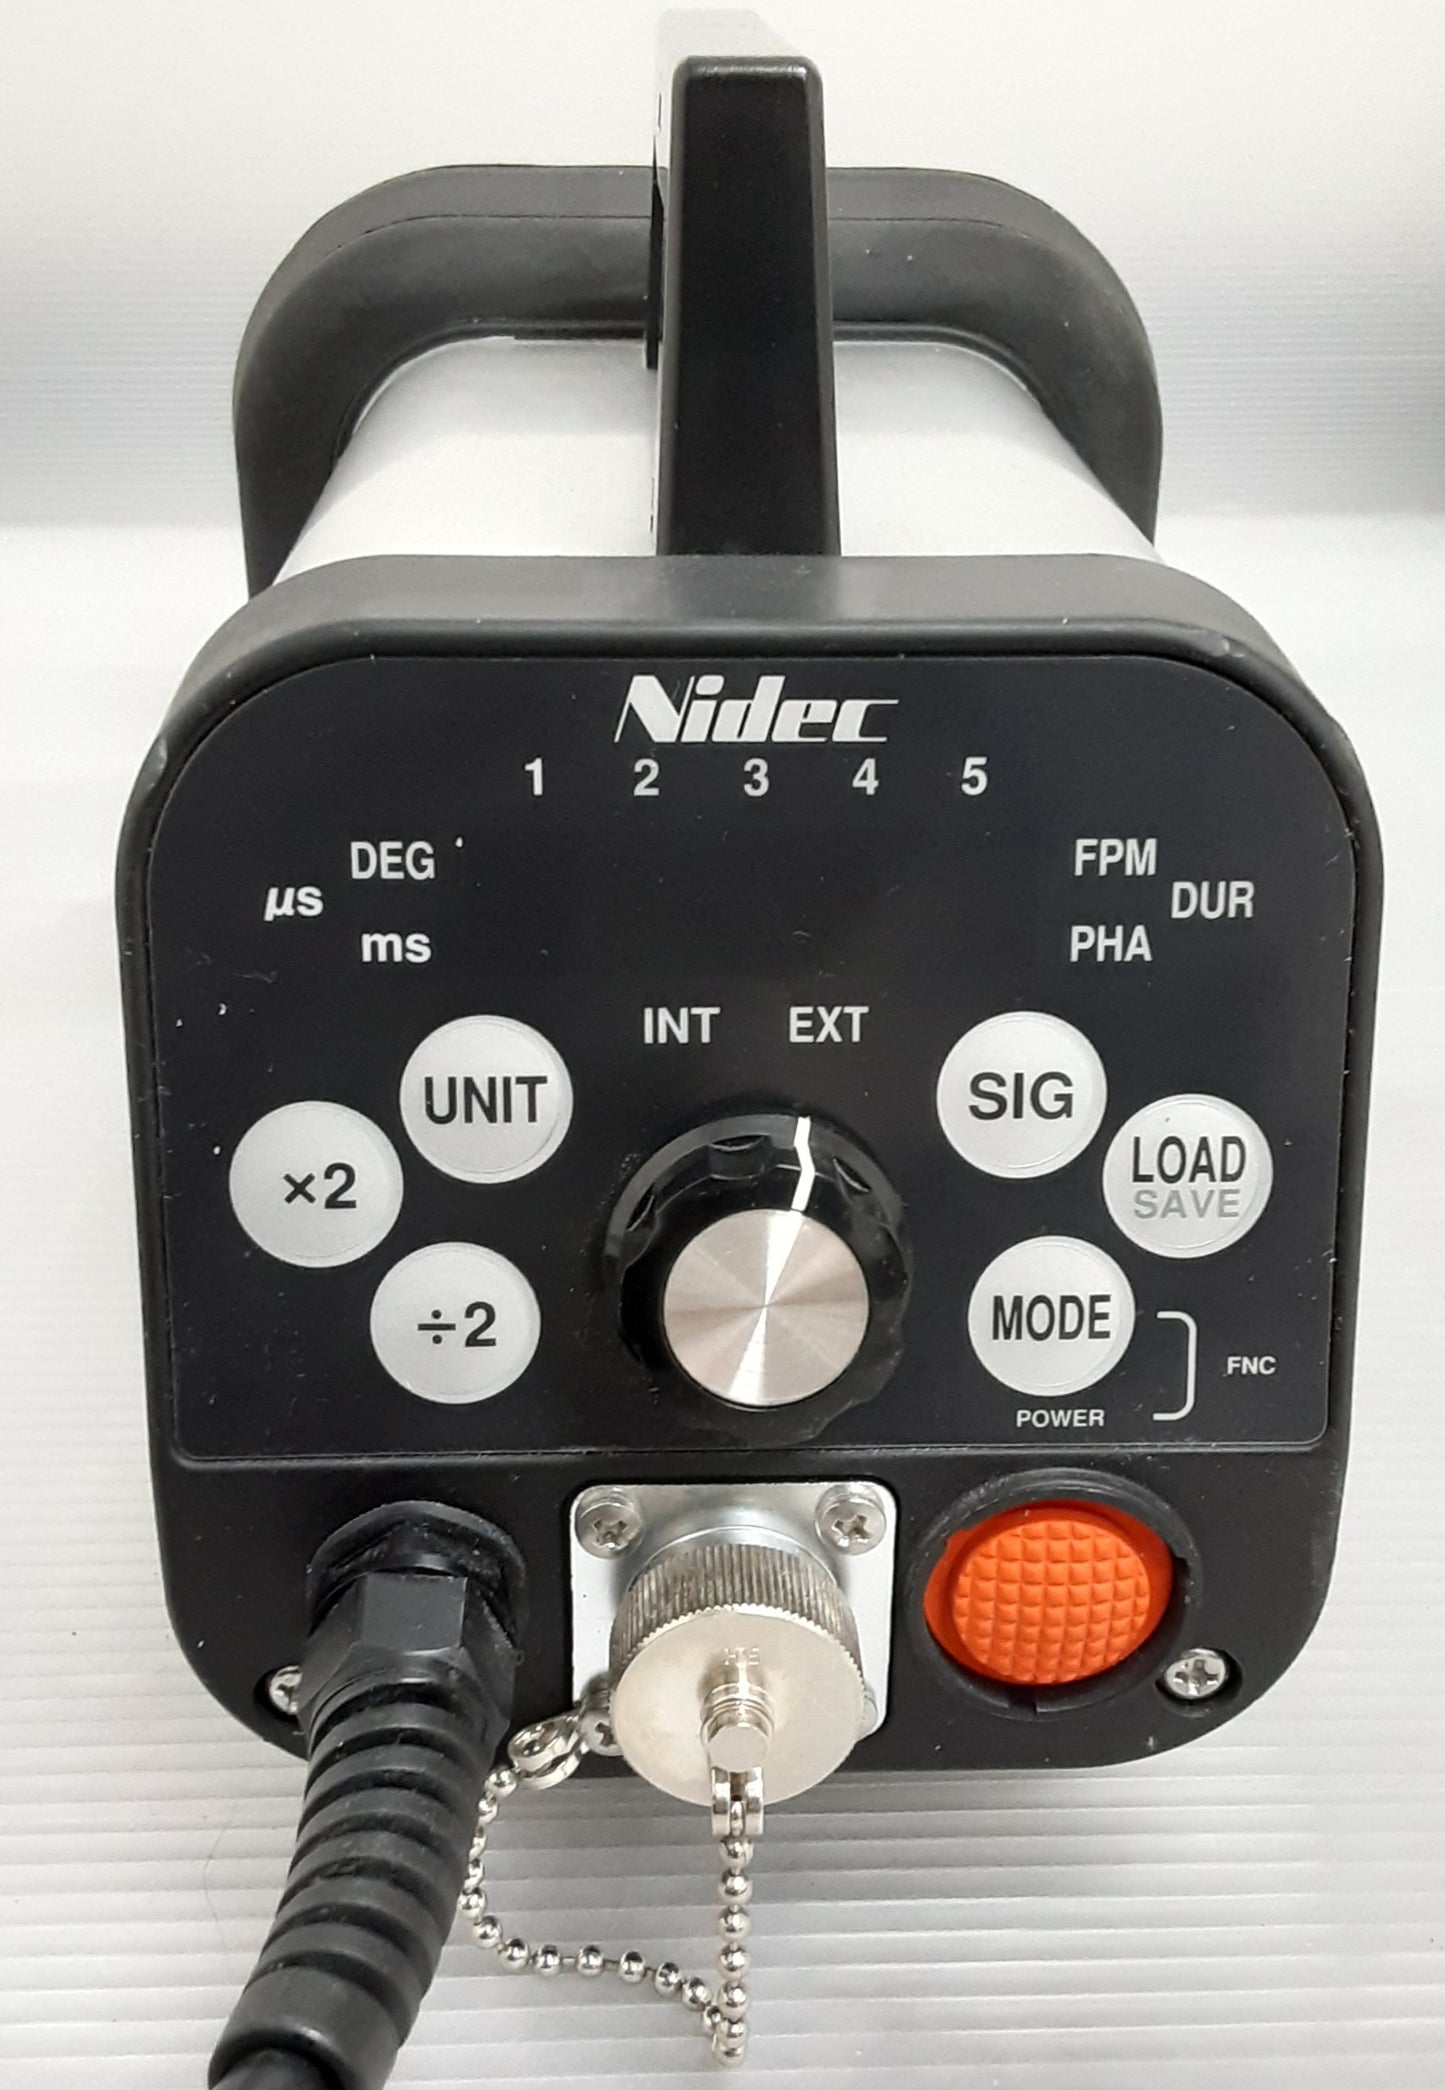 日本電産シンポ(NIDEC)製 LEDストロボスコープ DT-361 機械動作確認･印刷チェック用機器 nihondensanshimpo1-dt361-6033